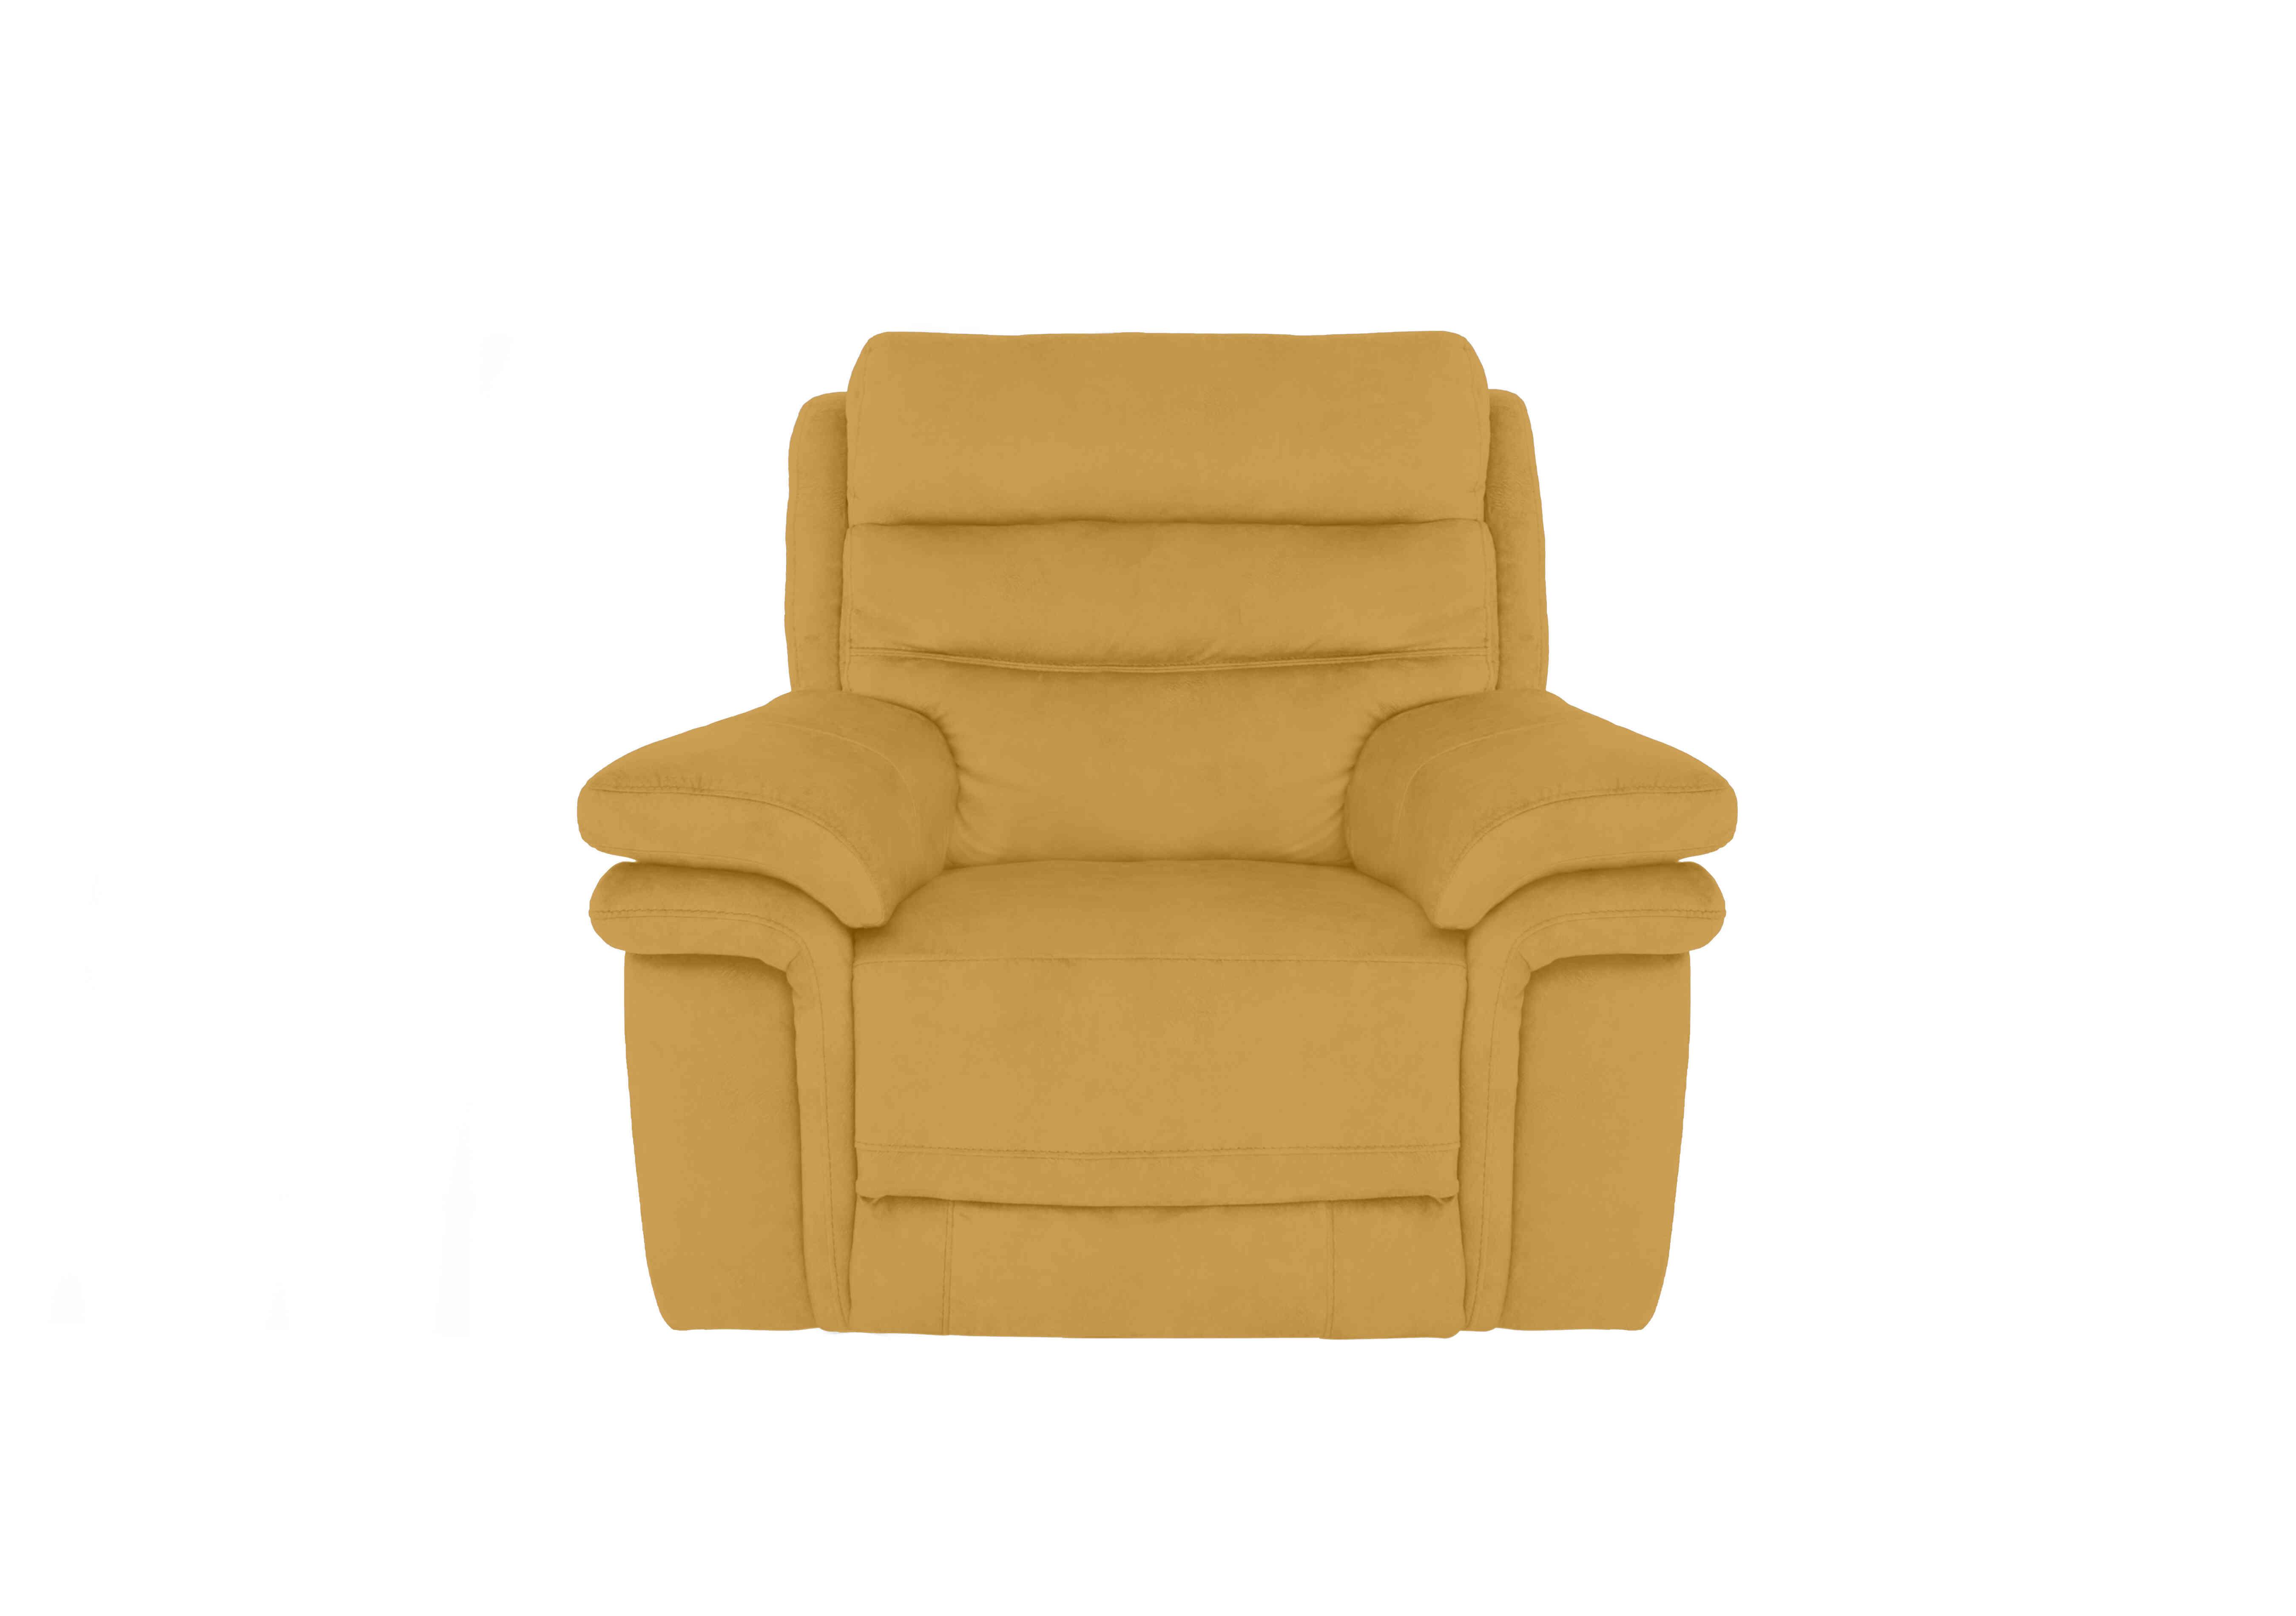 Berlin Fabric Chair in Velvet Giallo Vv-0310 on Furniture Village